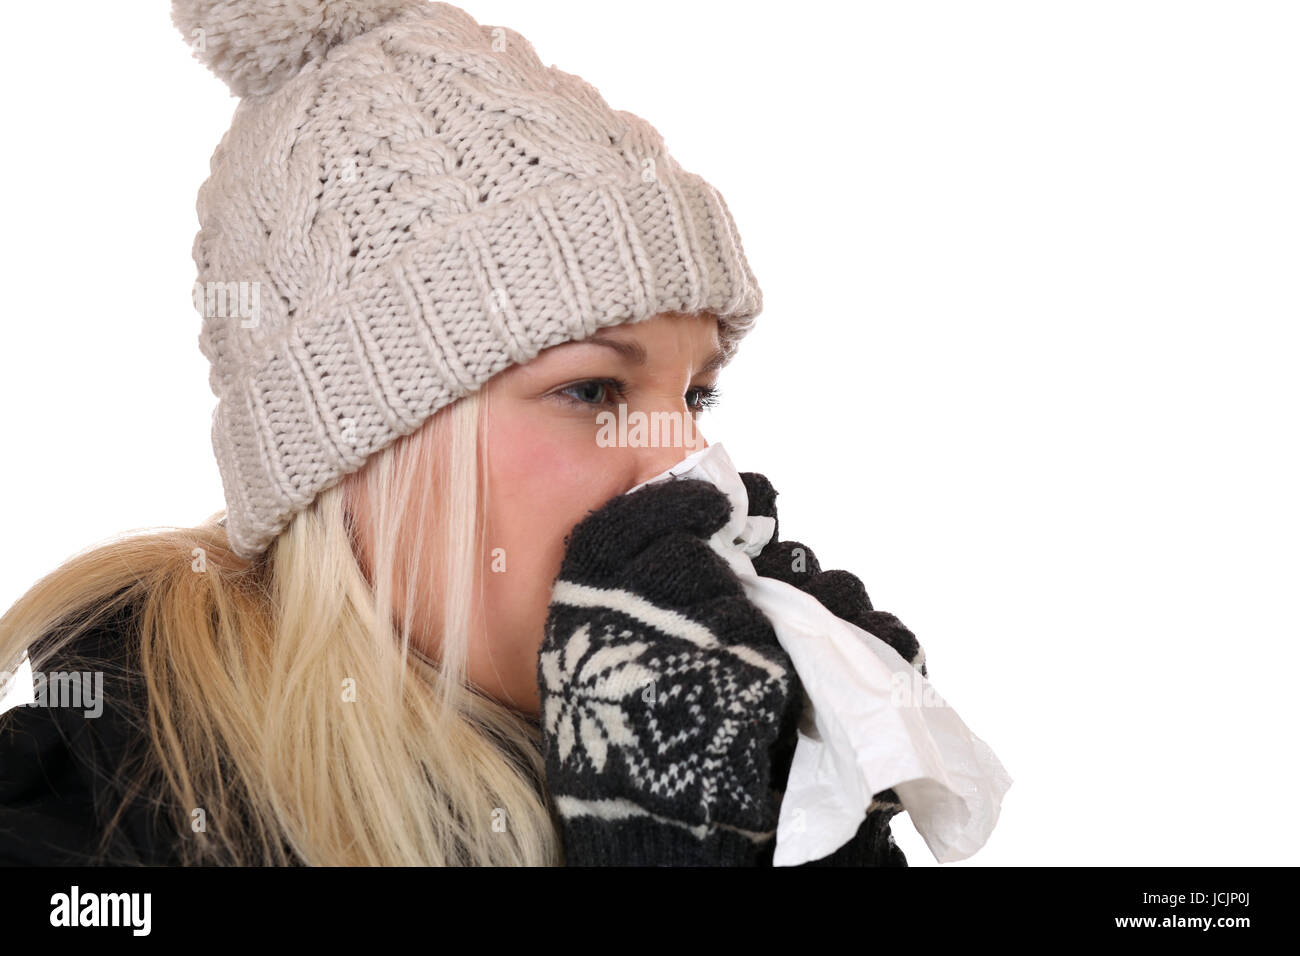 Junge Frau mit Taschentuch ist krank hat eine Erkältung oder Grippe, isoliert vor einem weissen Hintergrund Stock Photo